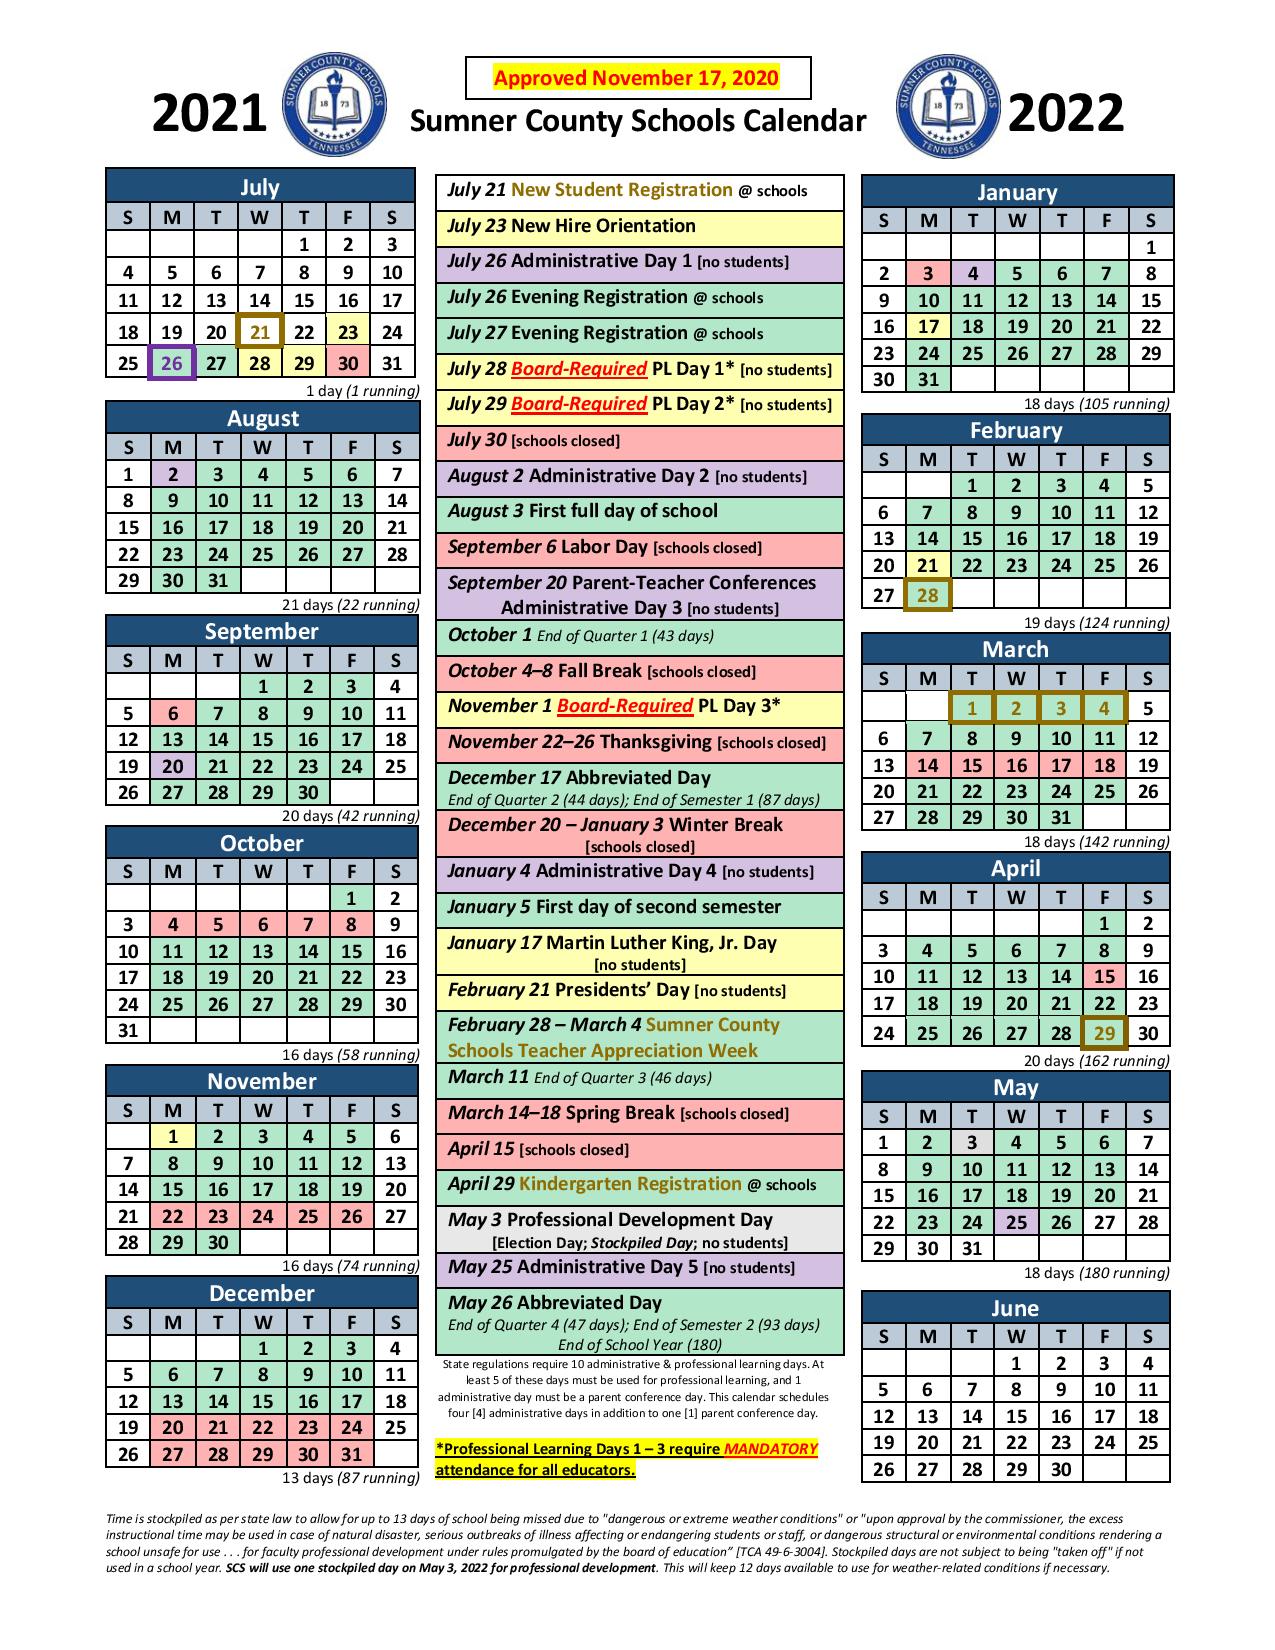 Wsfcs Calendar 202425 A Comprehensive Overview 2024 Calendar Sep